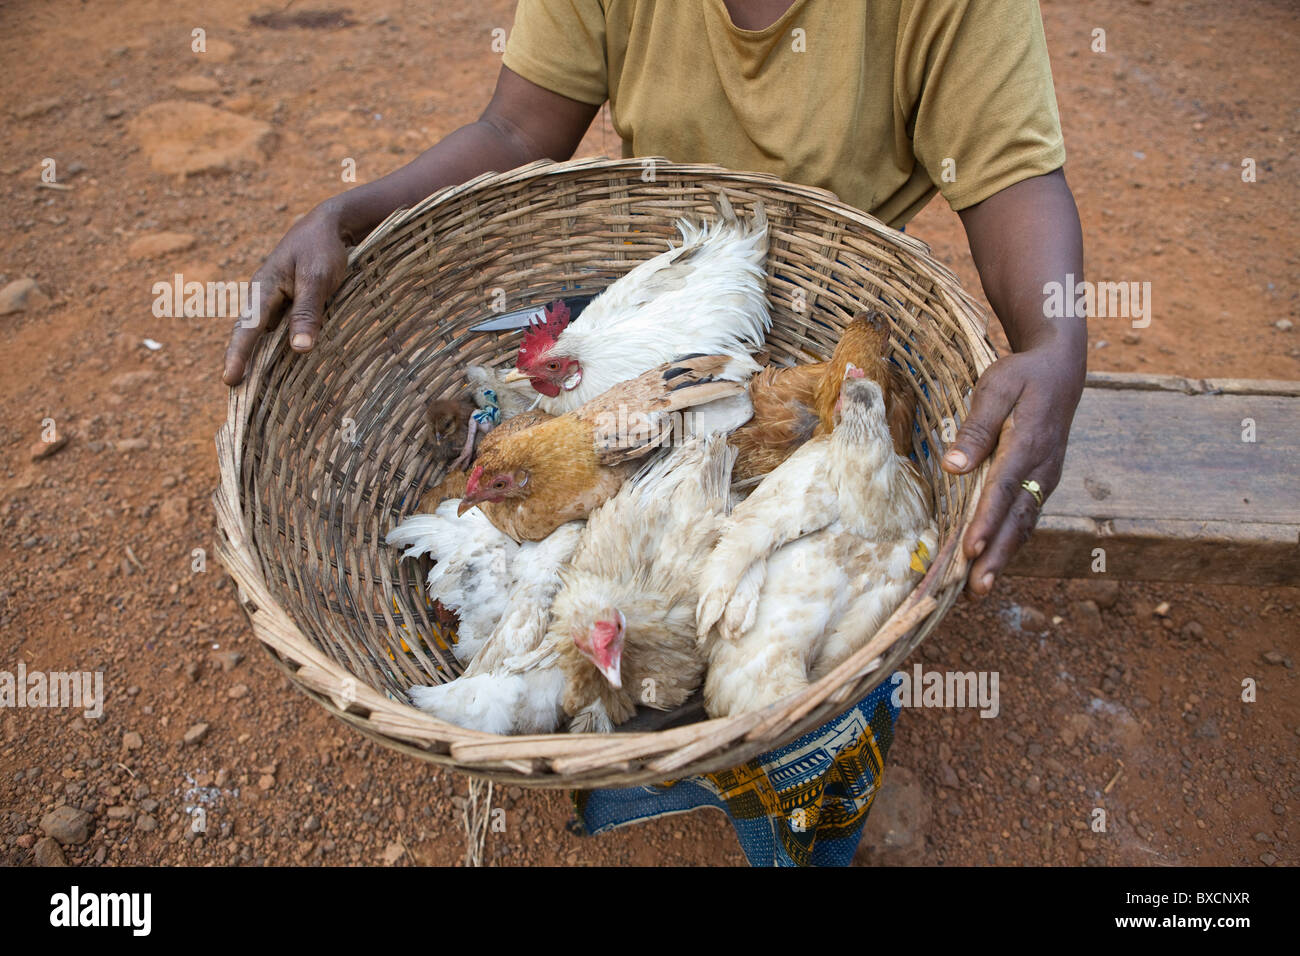 Eine Frau trägt einen Korb von Hühnern in Port Loko, Sierra Leone, Westafrika. Stockfoto